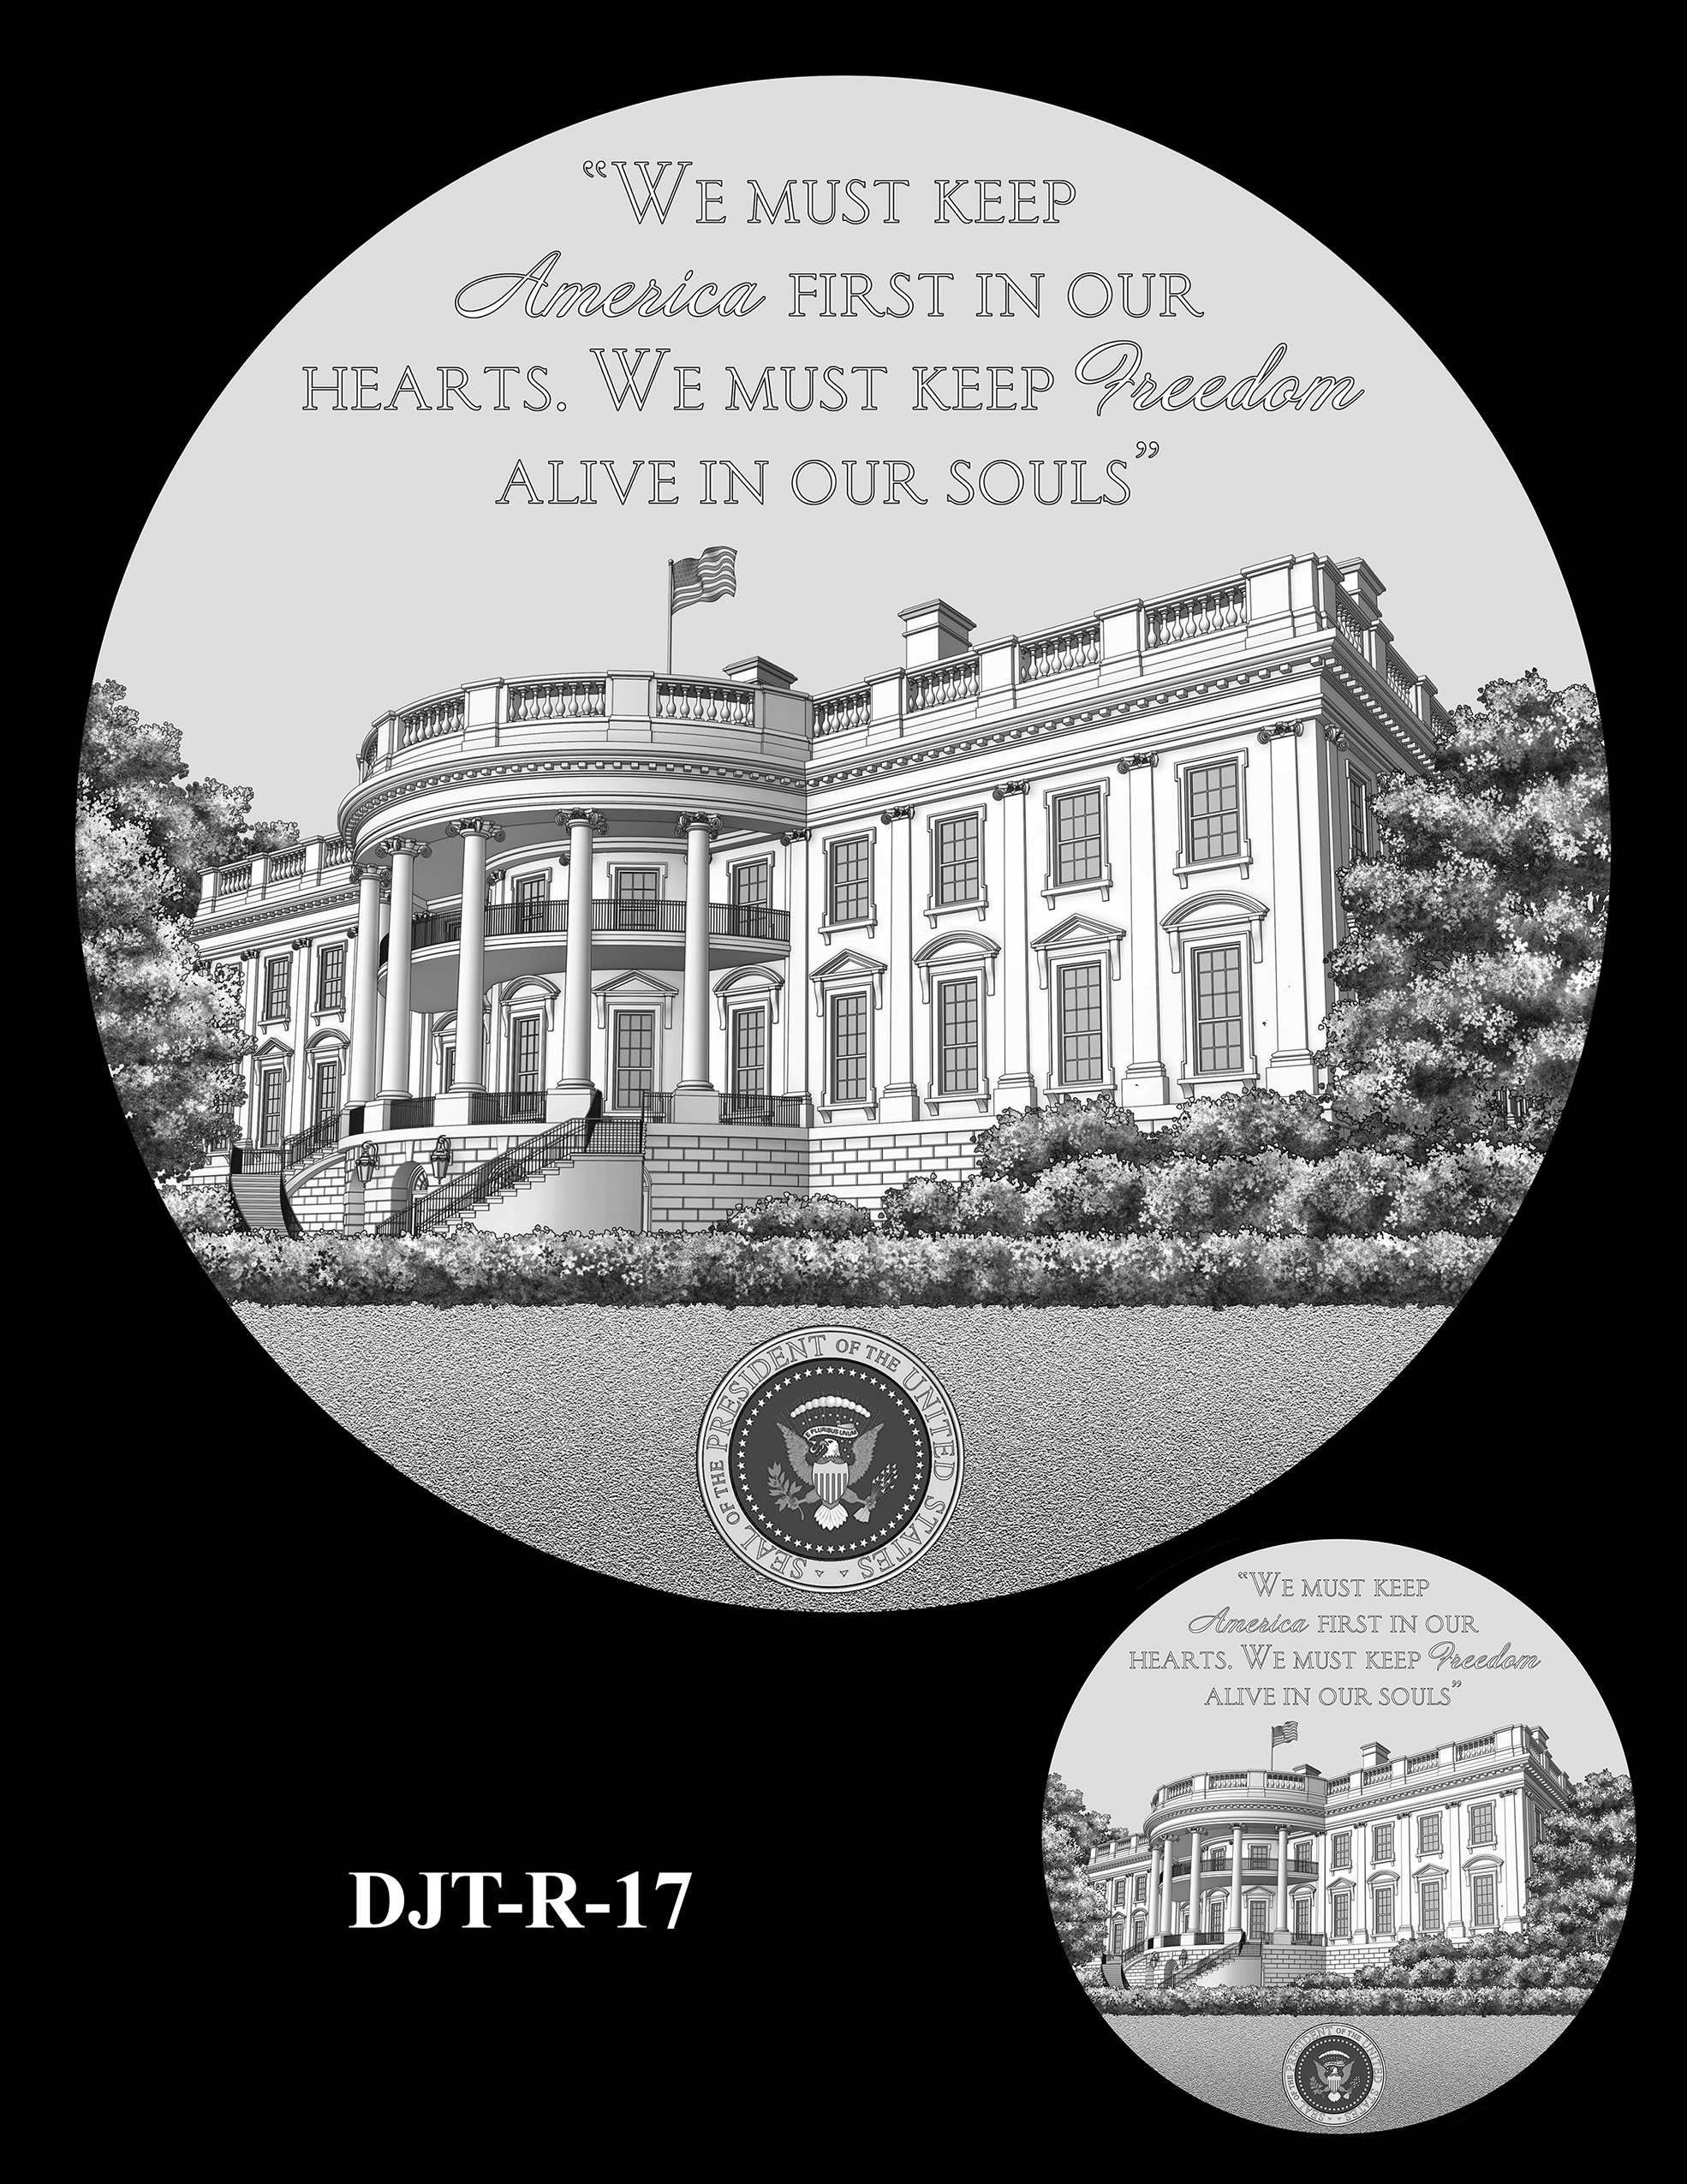 DJT-R-17 -- Donald J. Trump Presidential Medal